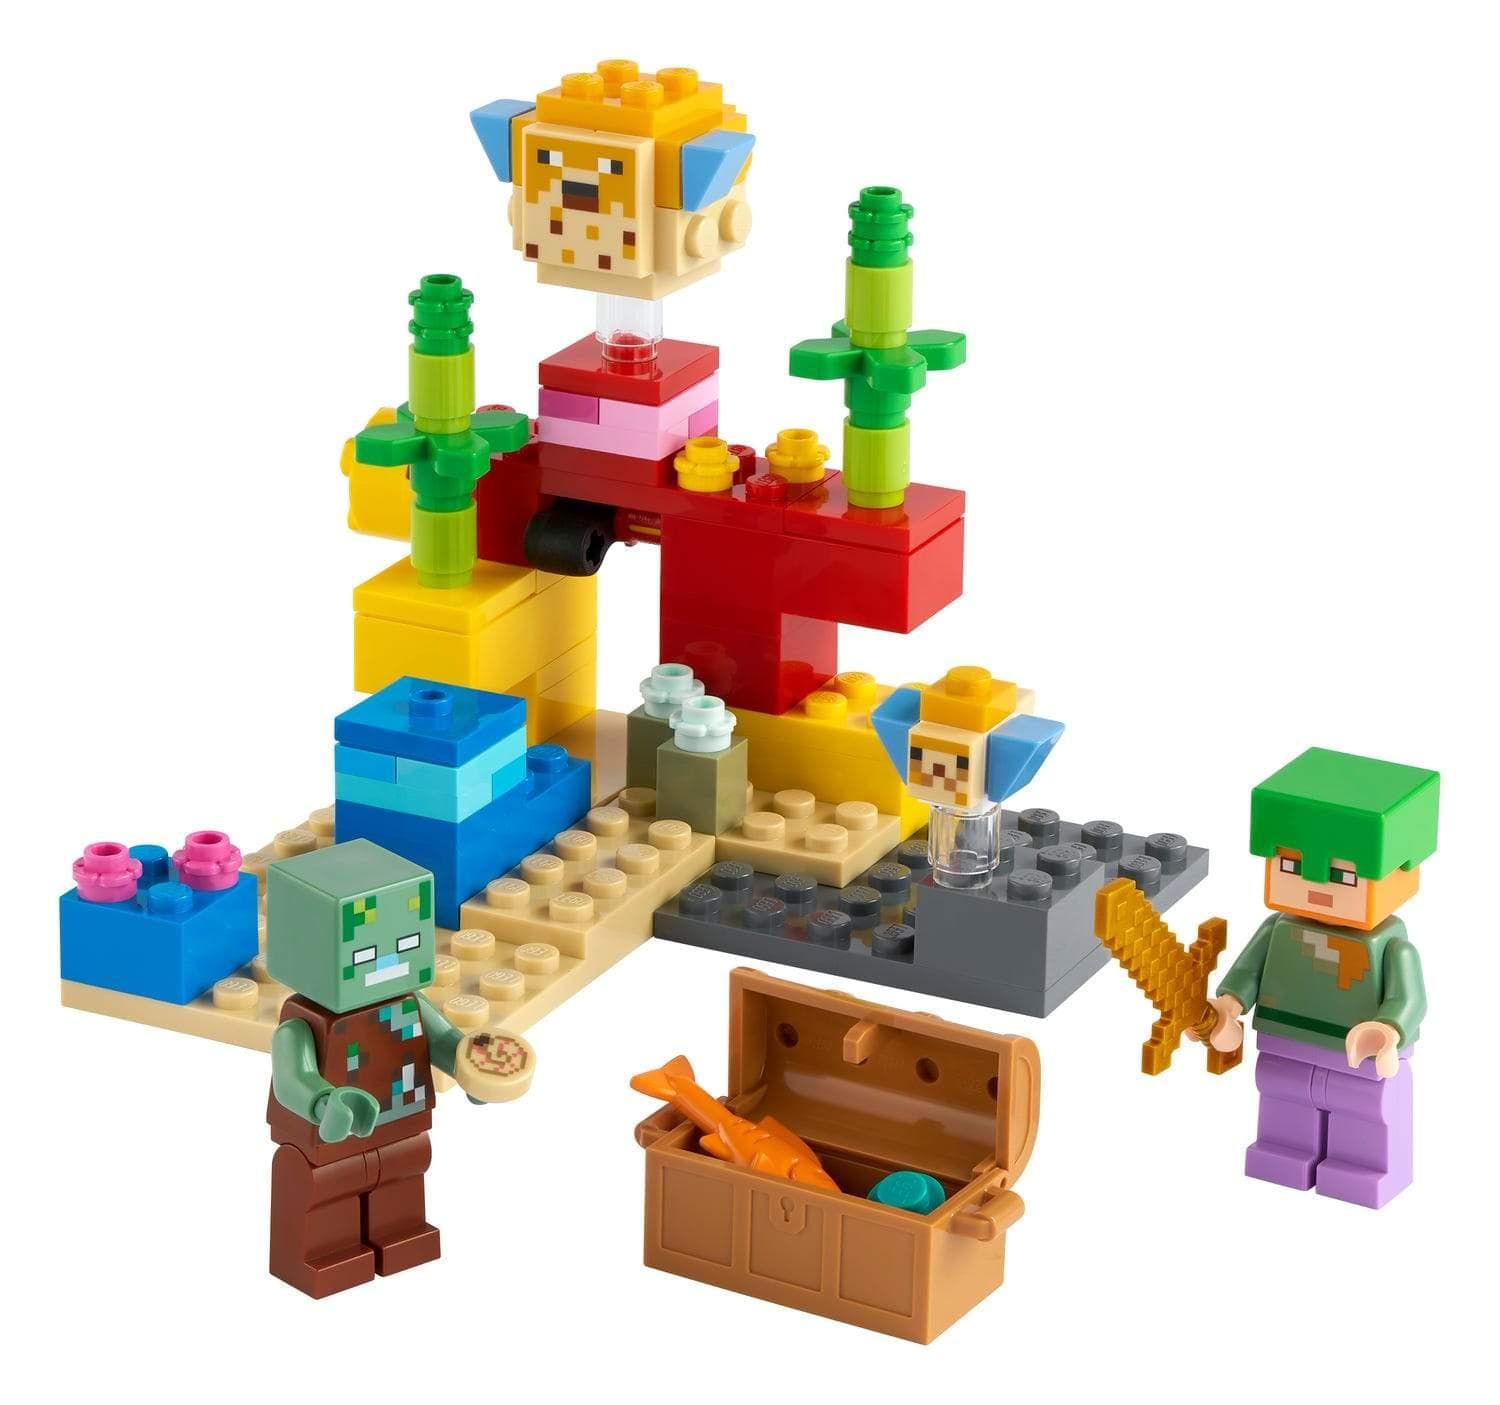 Lego®minecraft™ 21178 - le refuge renard, jeux de constructions &  maquettes